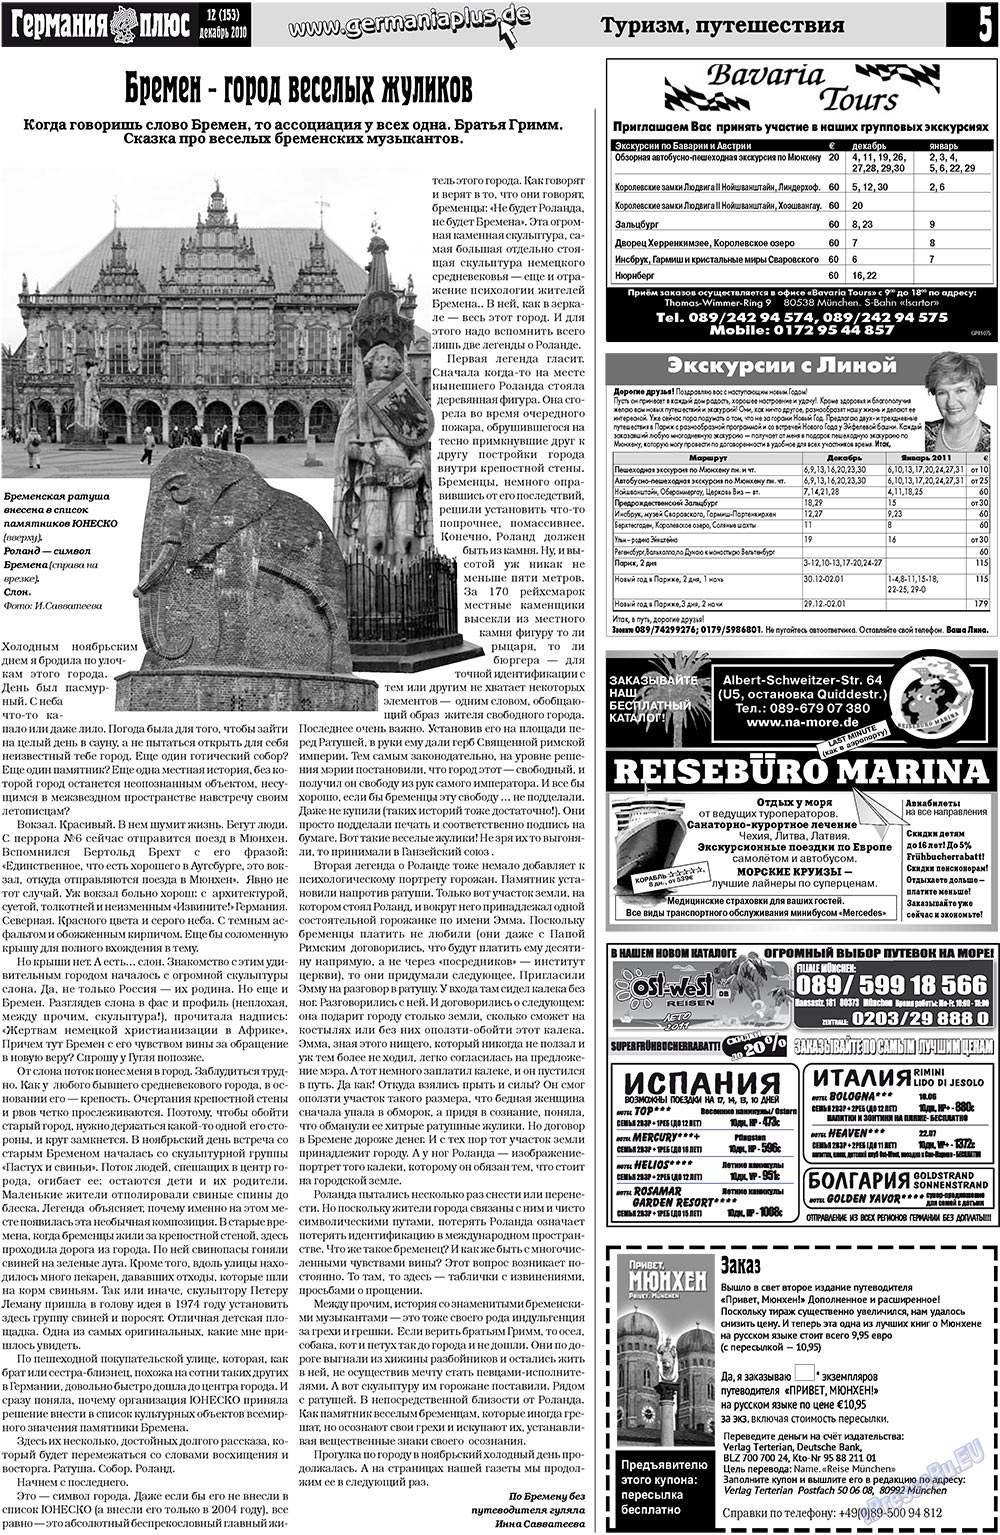 Германия плюс (газета). 2010 год, номер 12, стр. 5